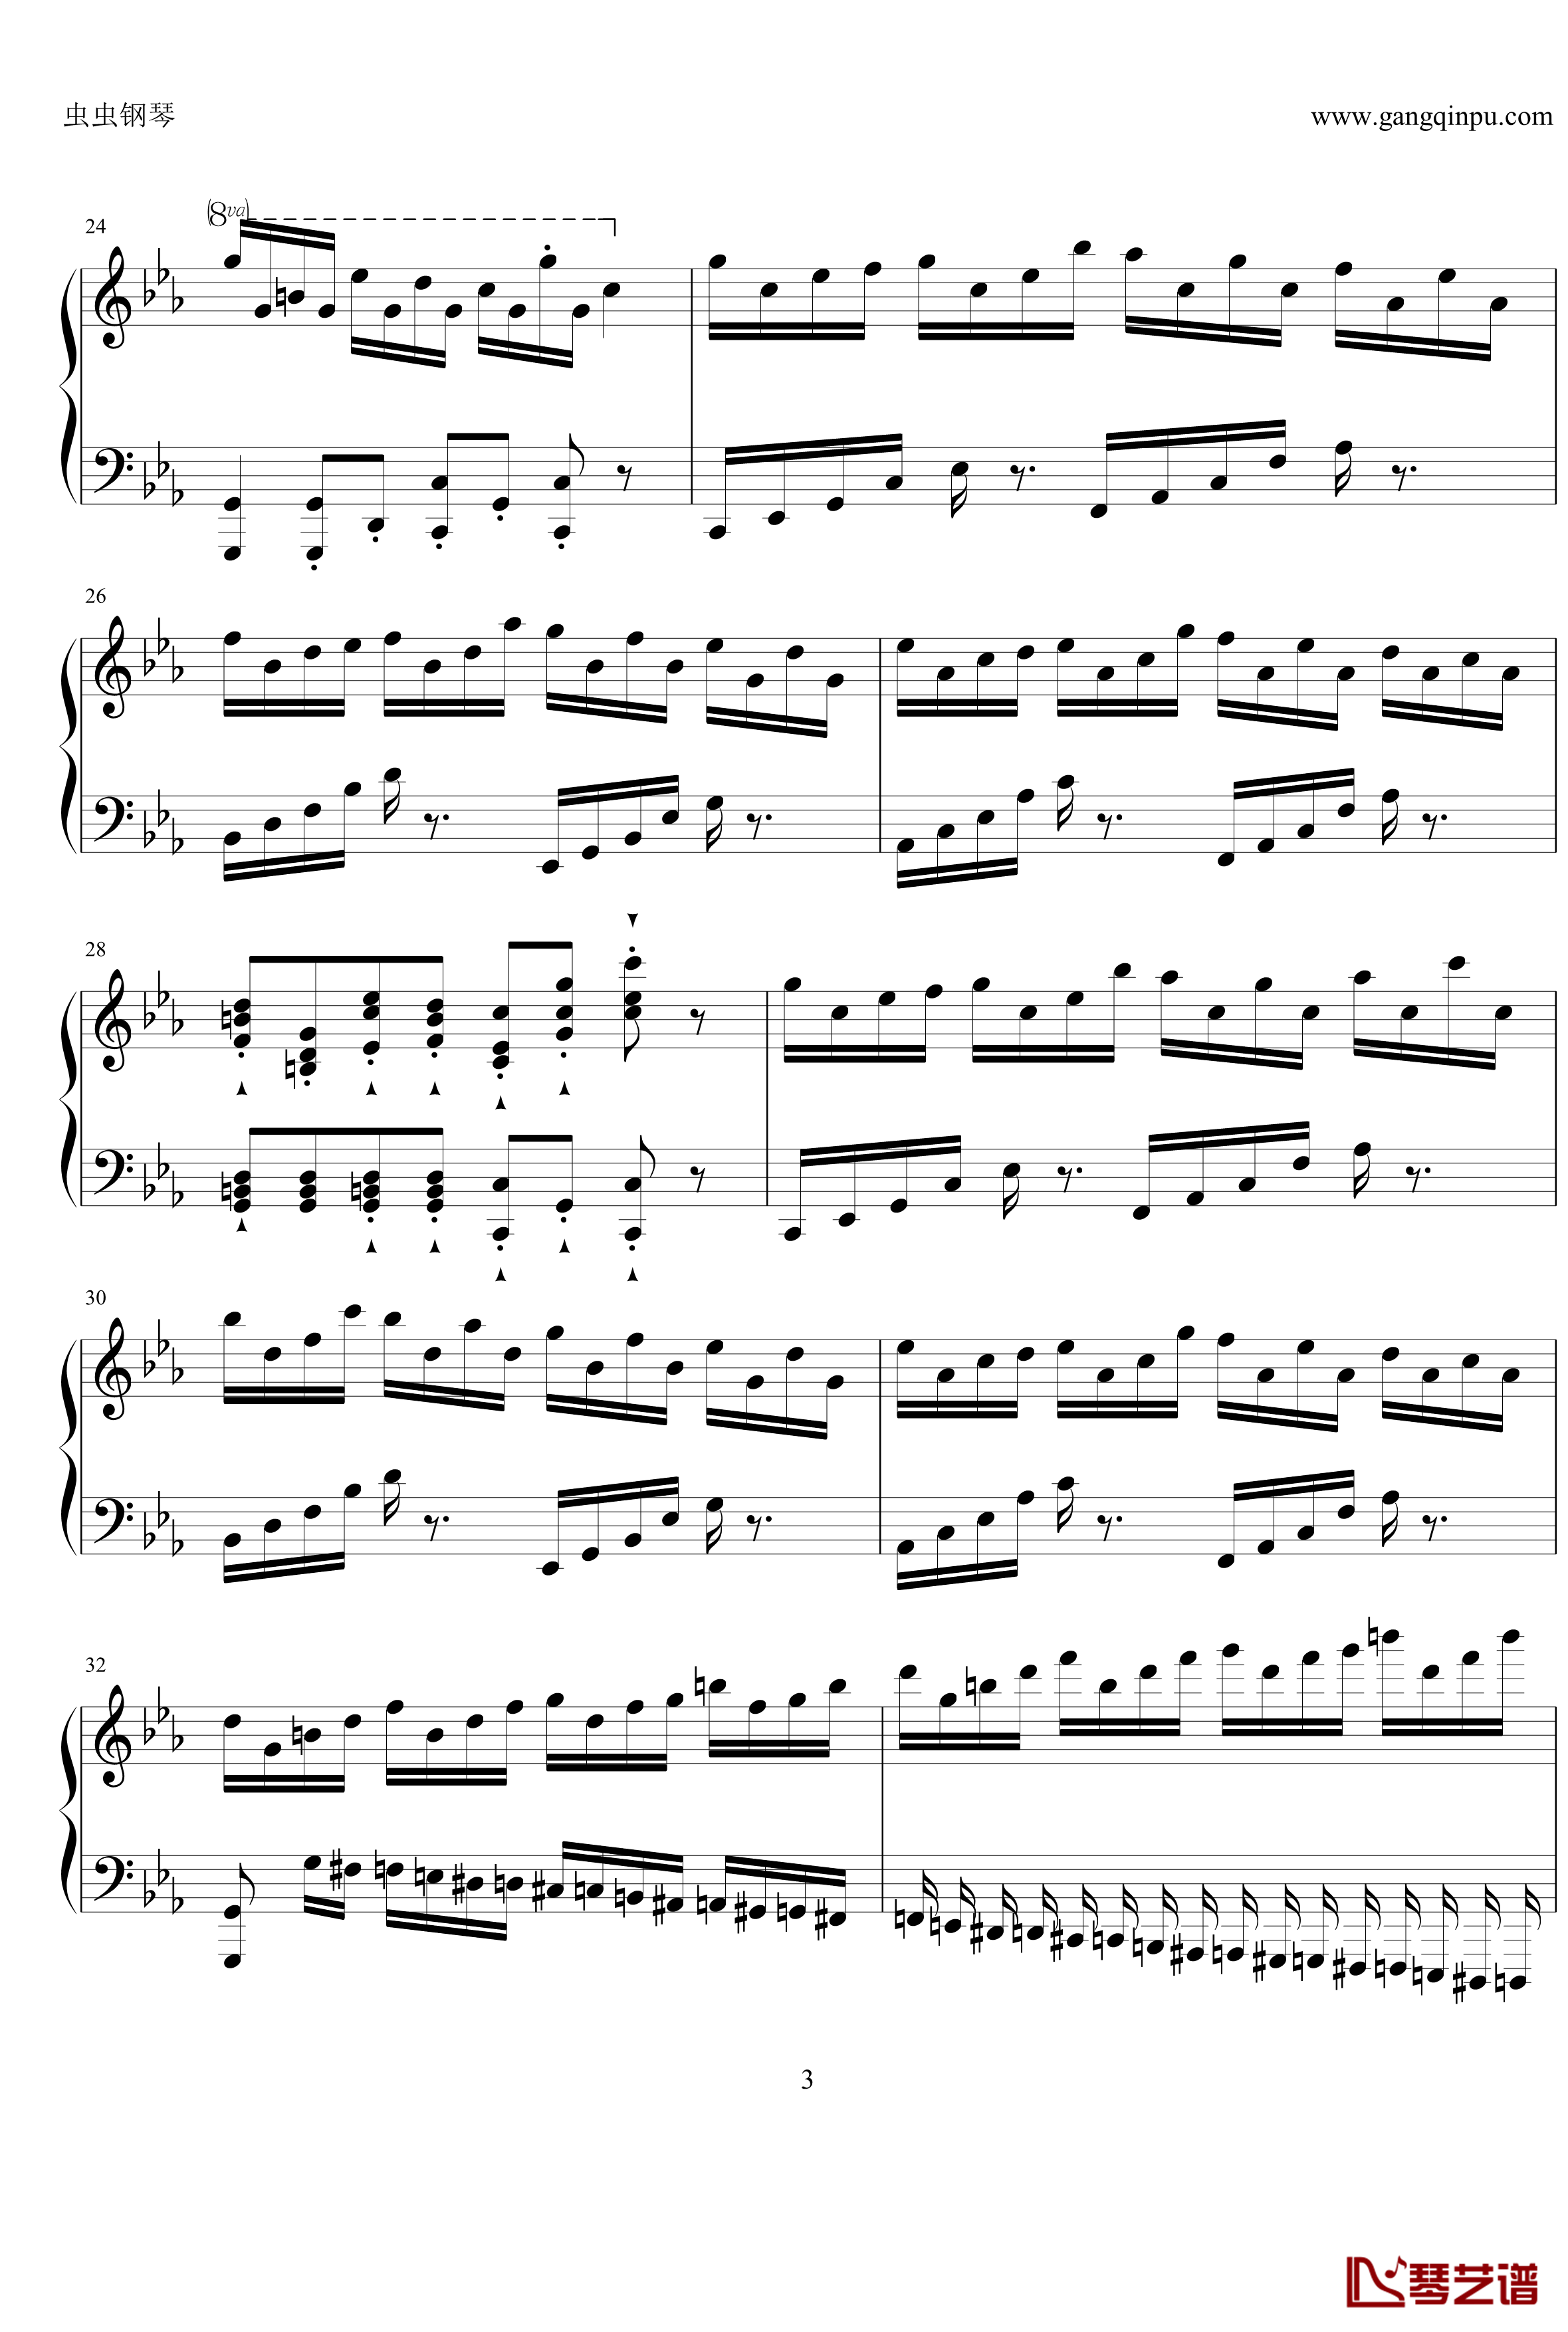 克罗地亚狂想曲pure1钢琴谱-现已绝版-马克西姆-Maksim·Mrvica3